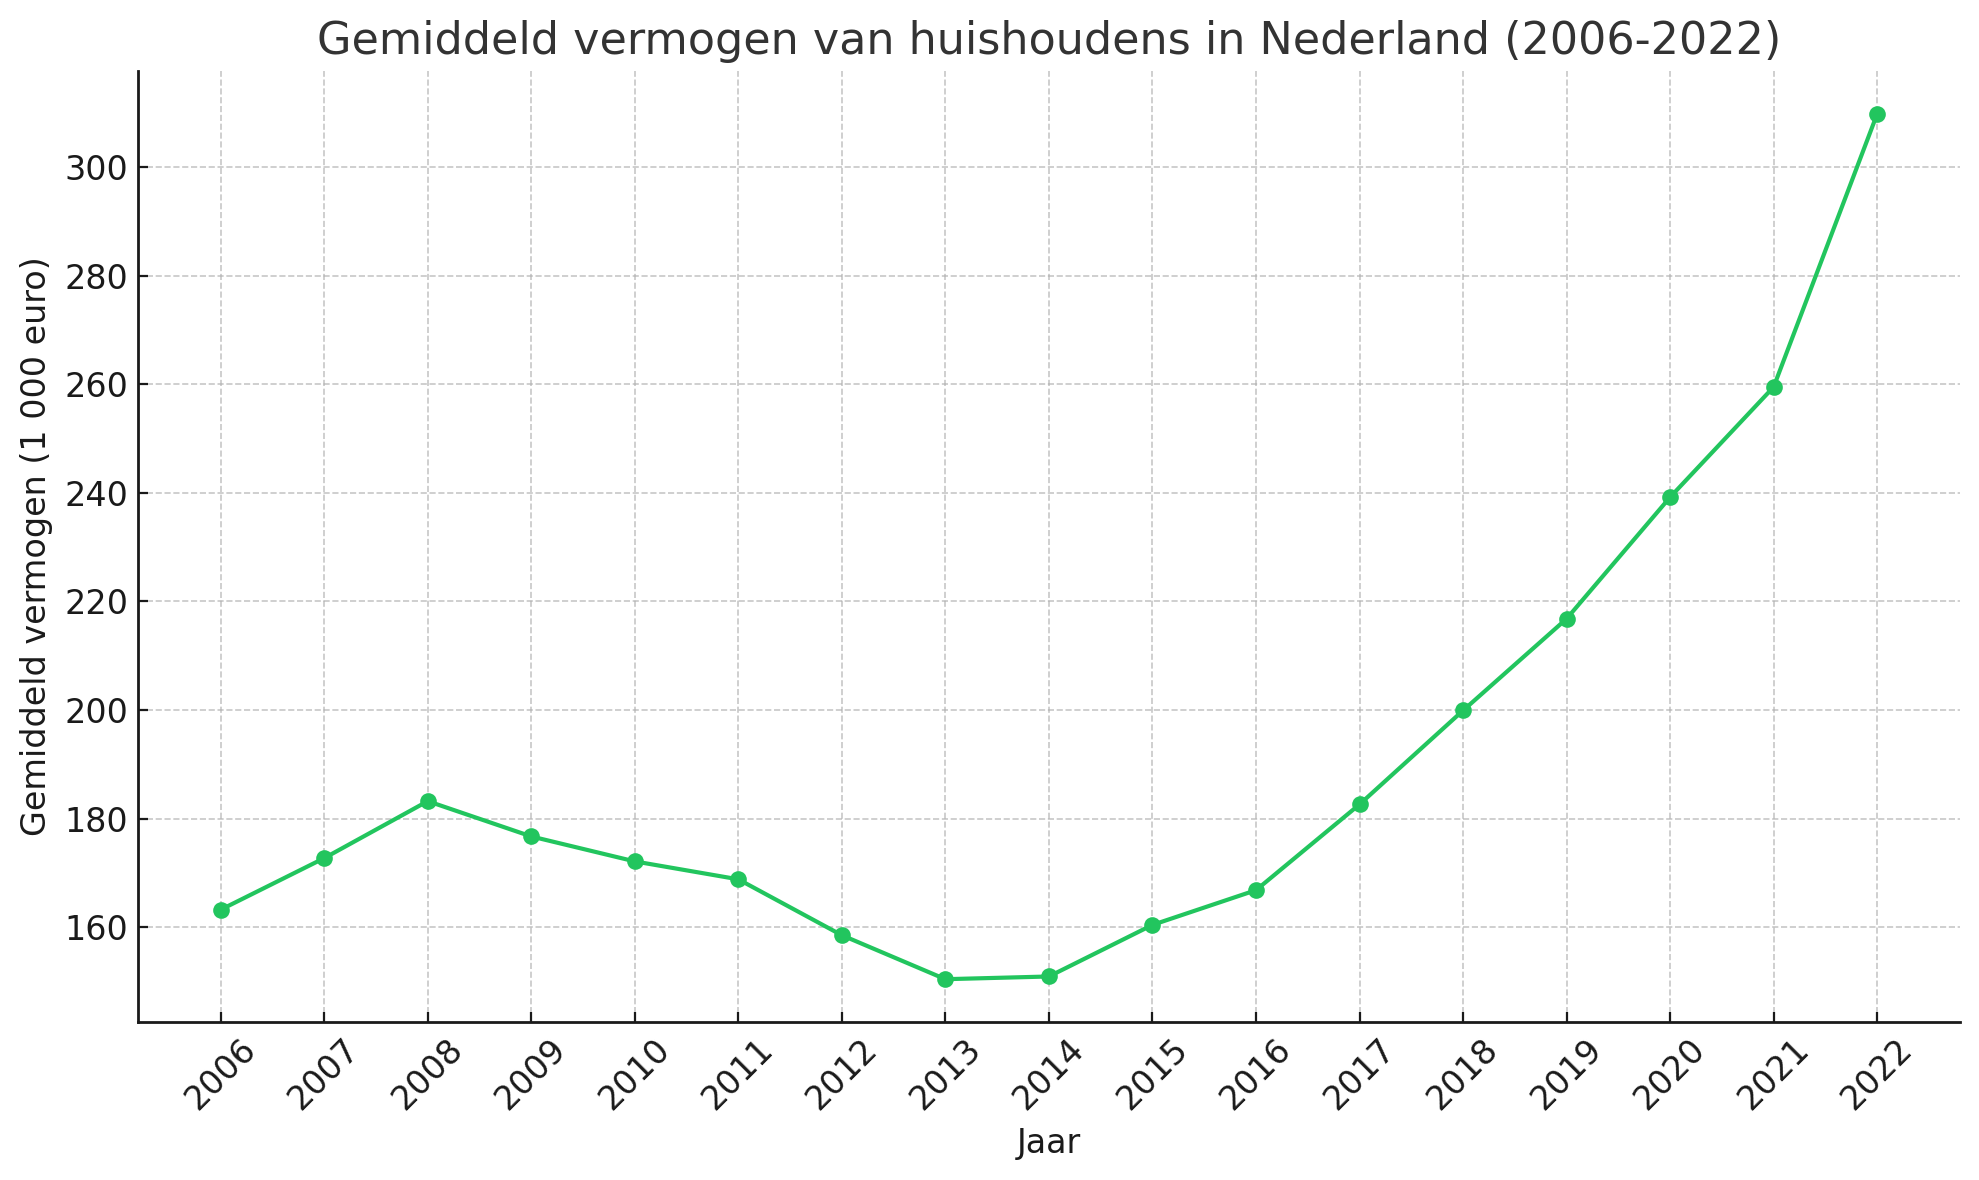 Gemiddeld vermogen van huishoudens in Nederland